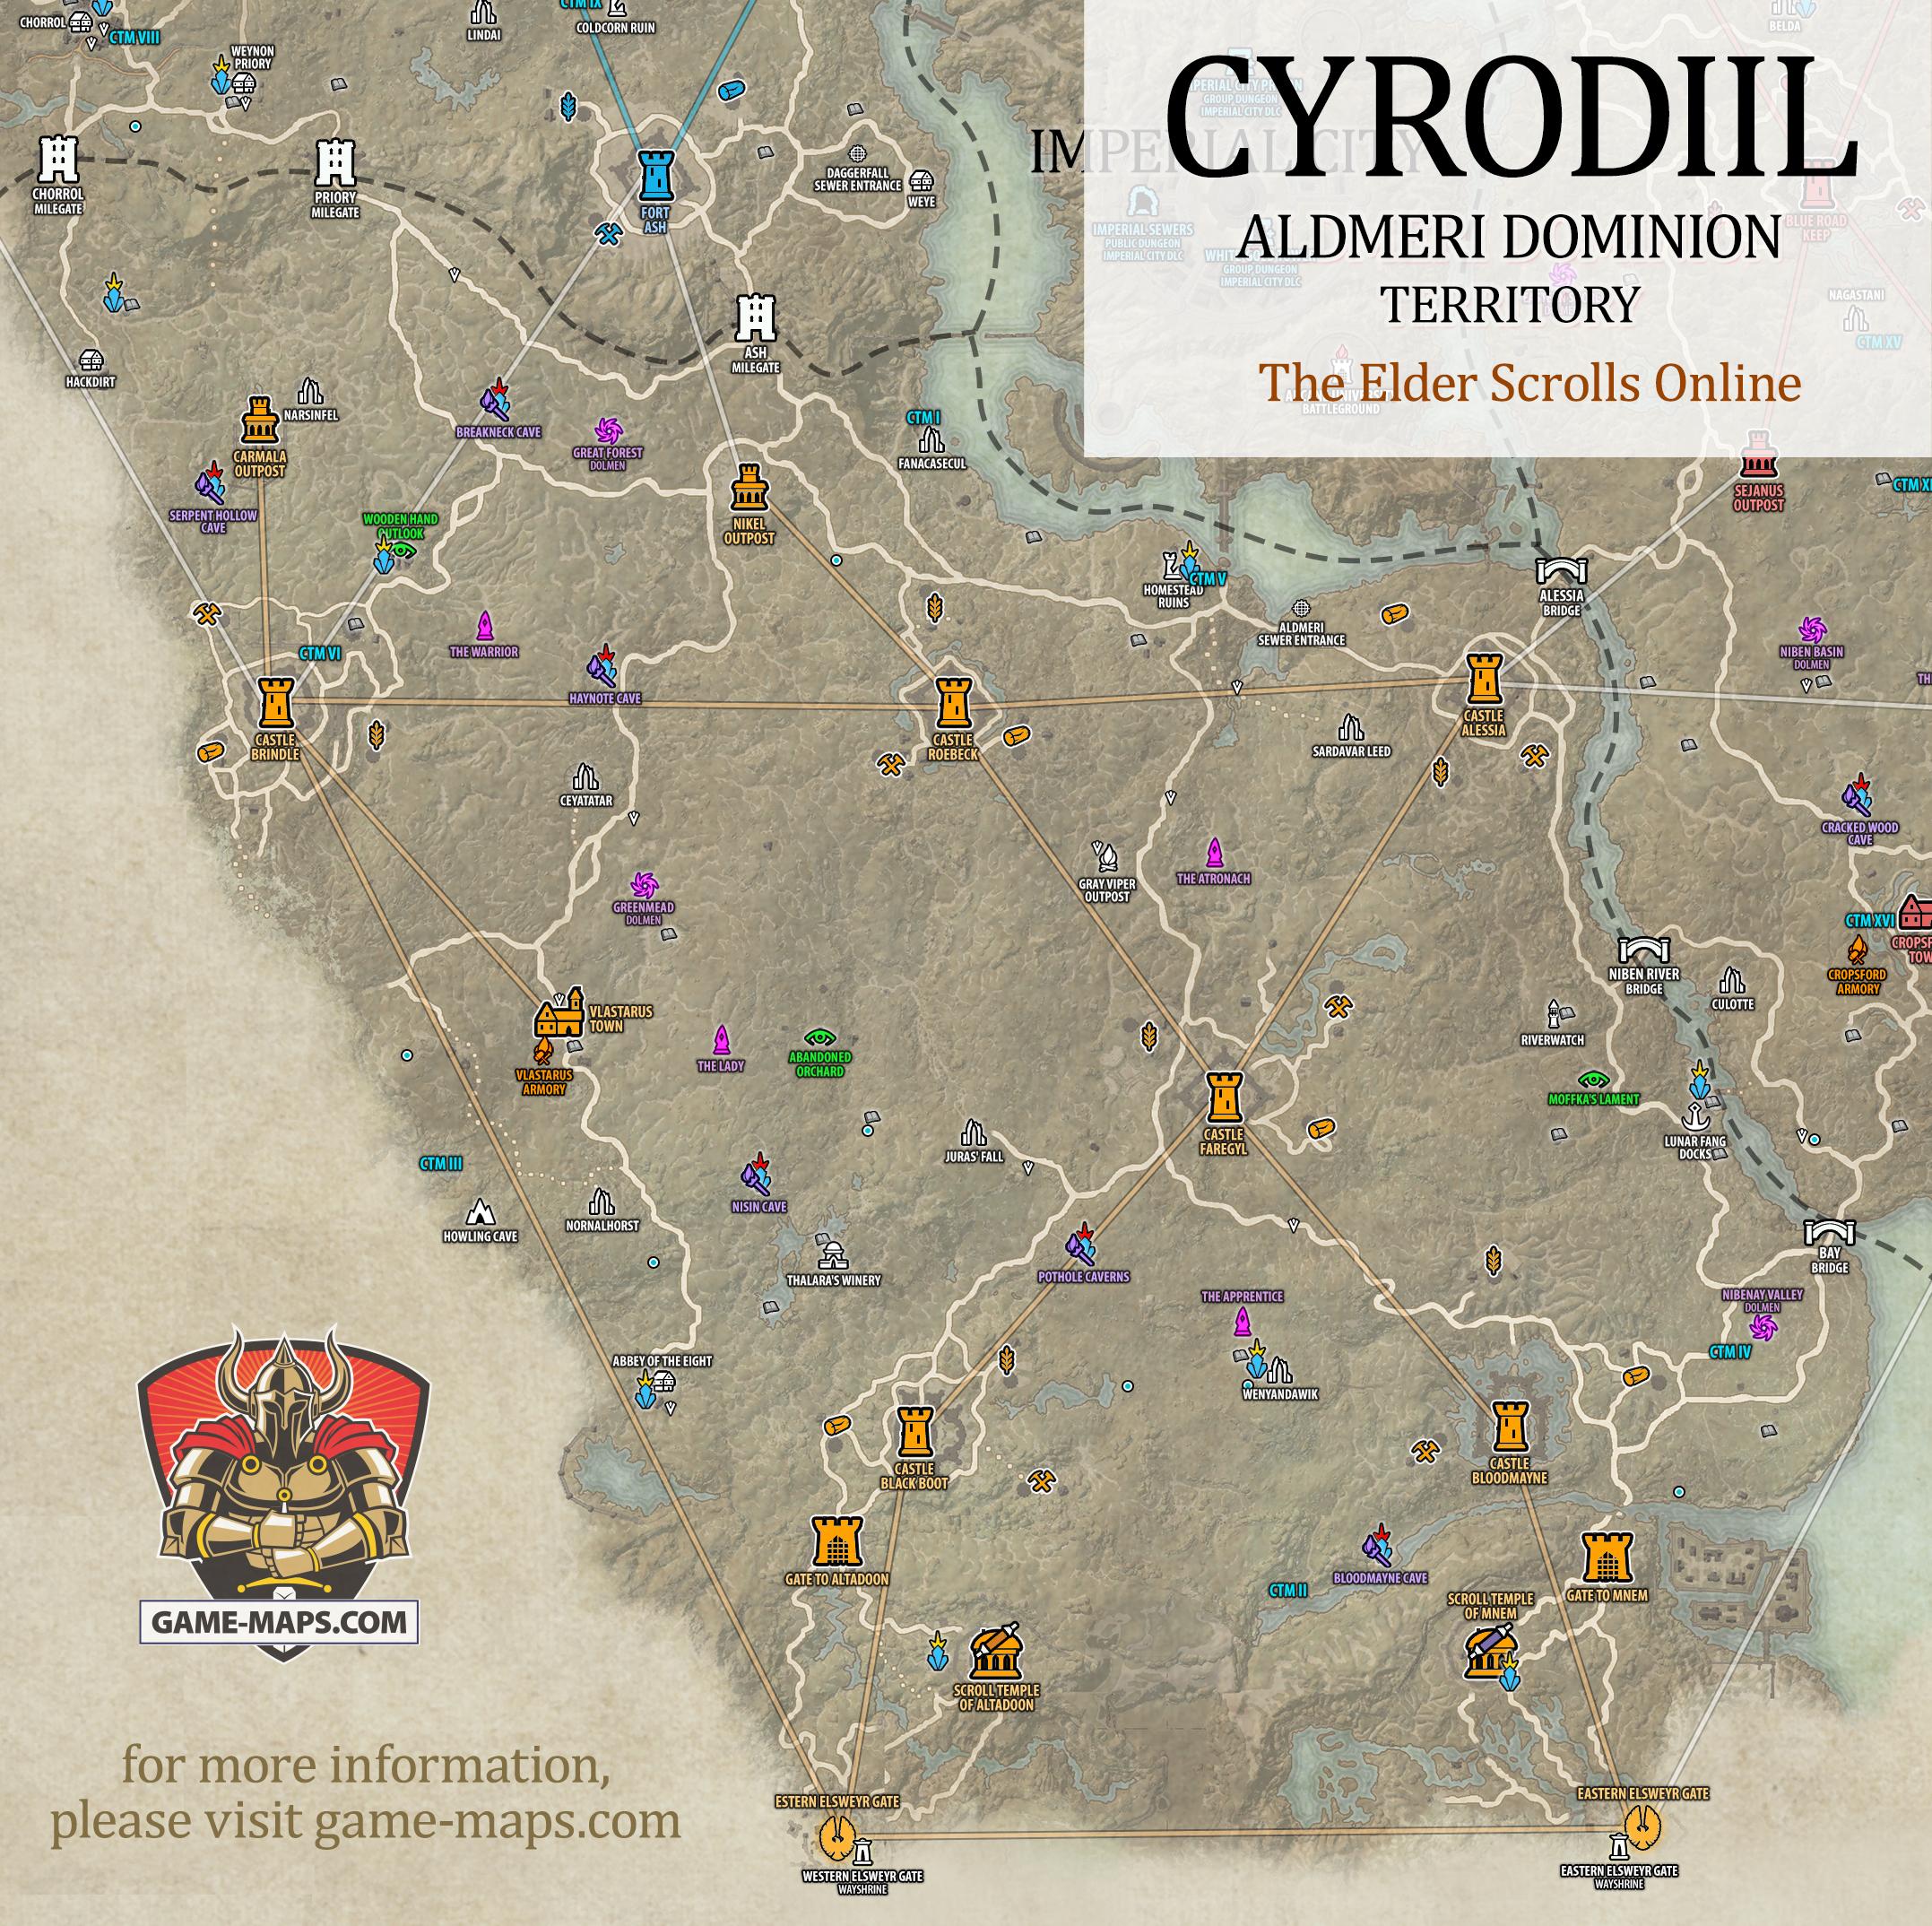 Cyrodiil Aldmeri Dominion Territory Map for The Elder Scrolls Online, Alliance War (PvP) (ESO).